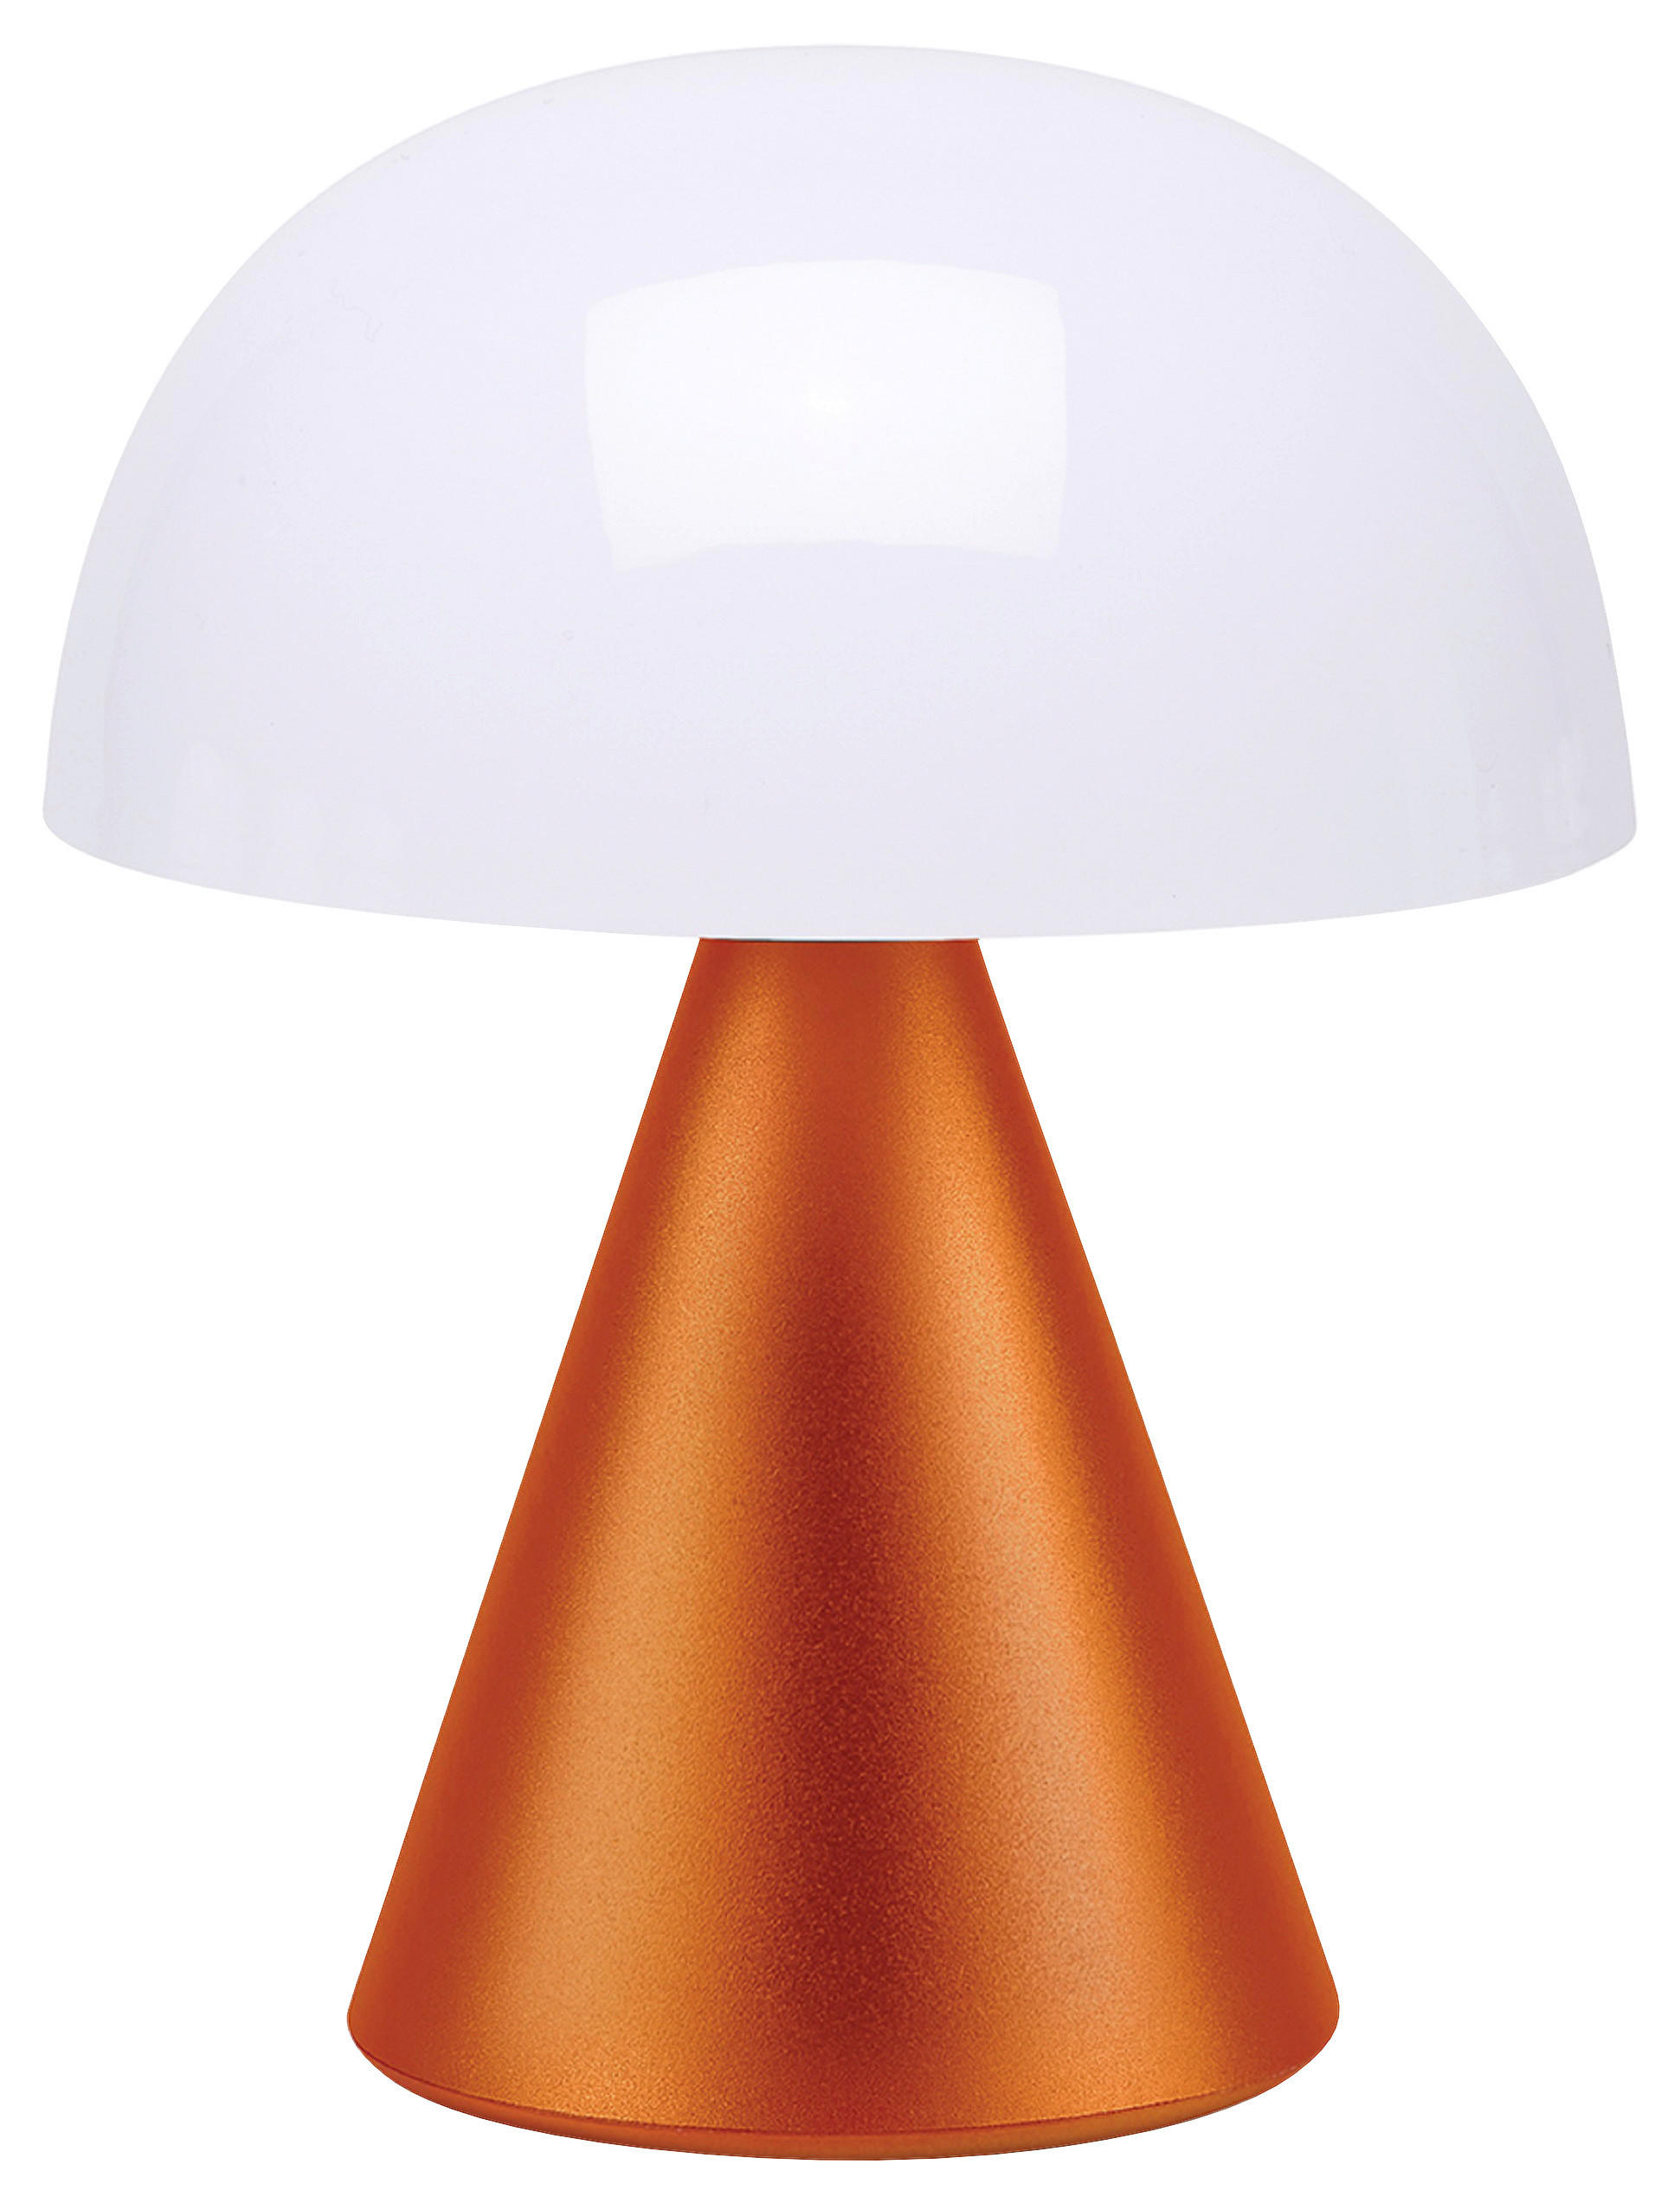 TISCHLEUCHTE  - Orange, Design, Kunststoff/Metall (14/17/14cm)